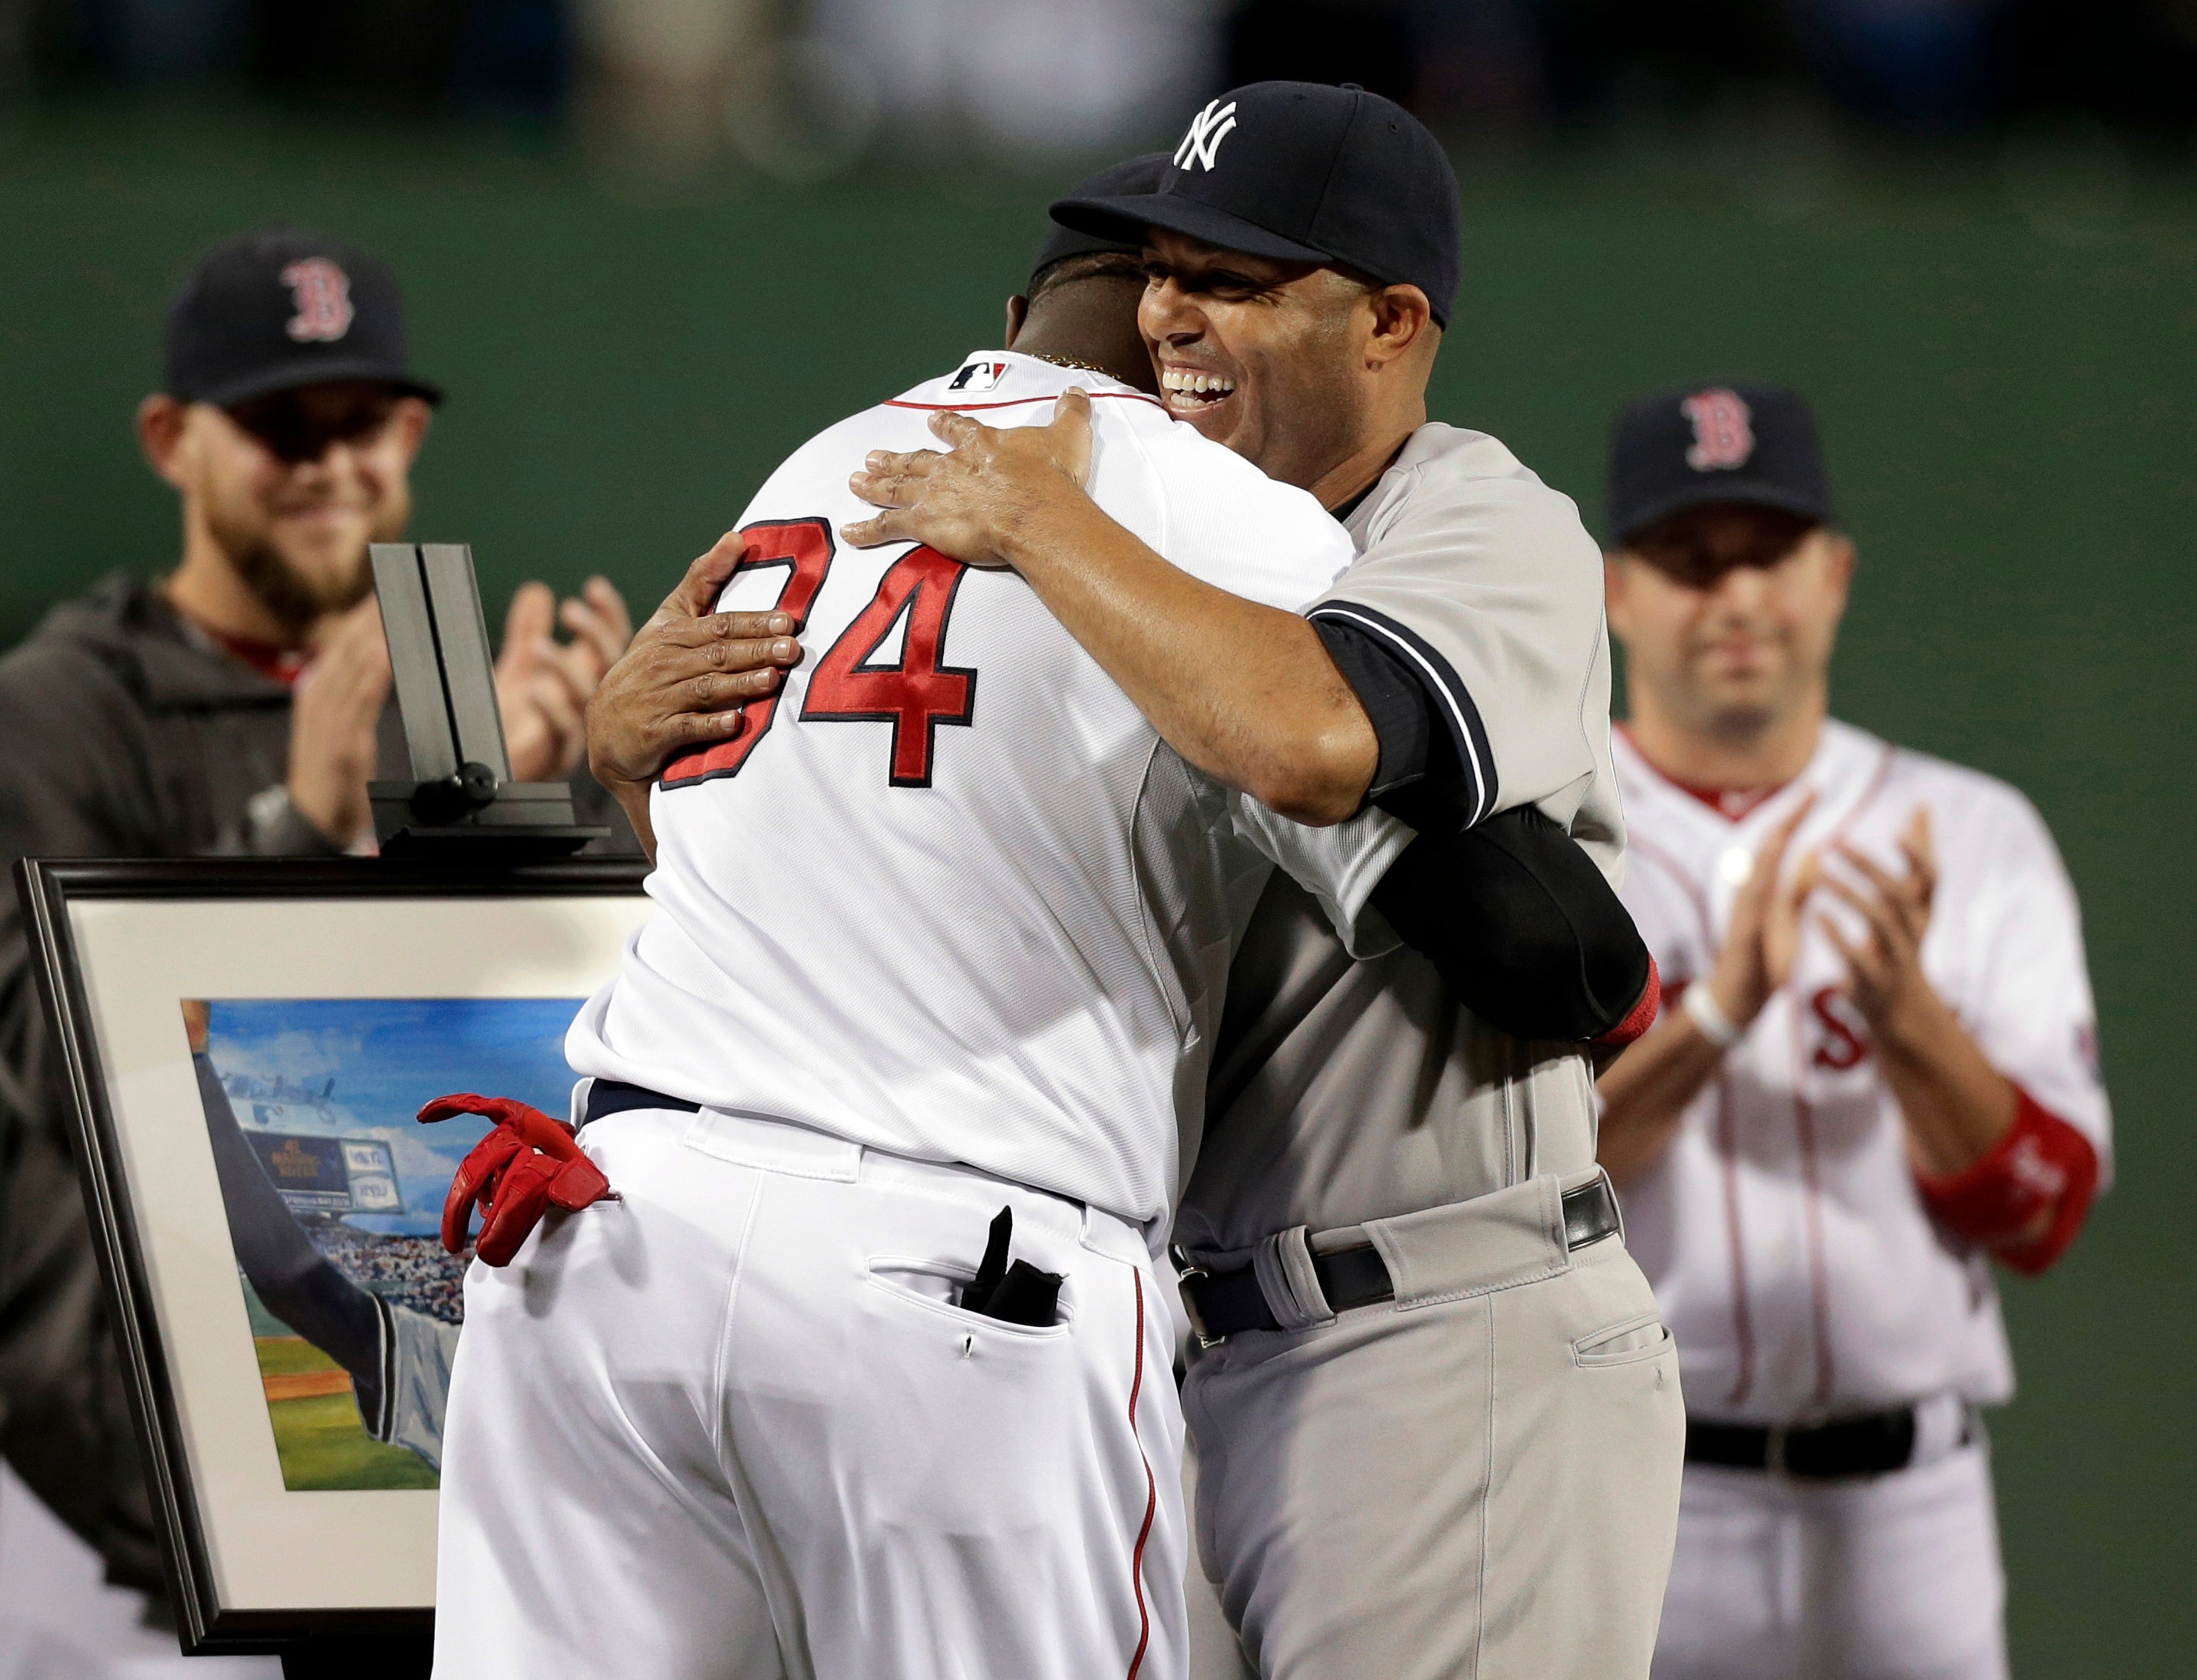 Boston Red Sox Honor New York Yankees Closer Mariano Rivera At Fenway Park